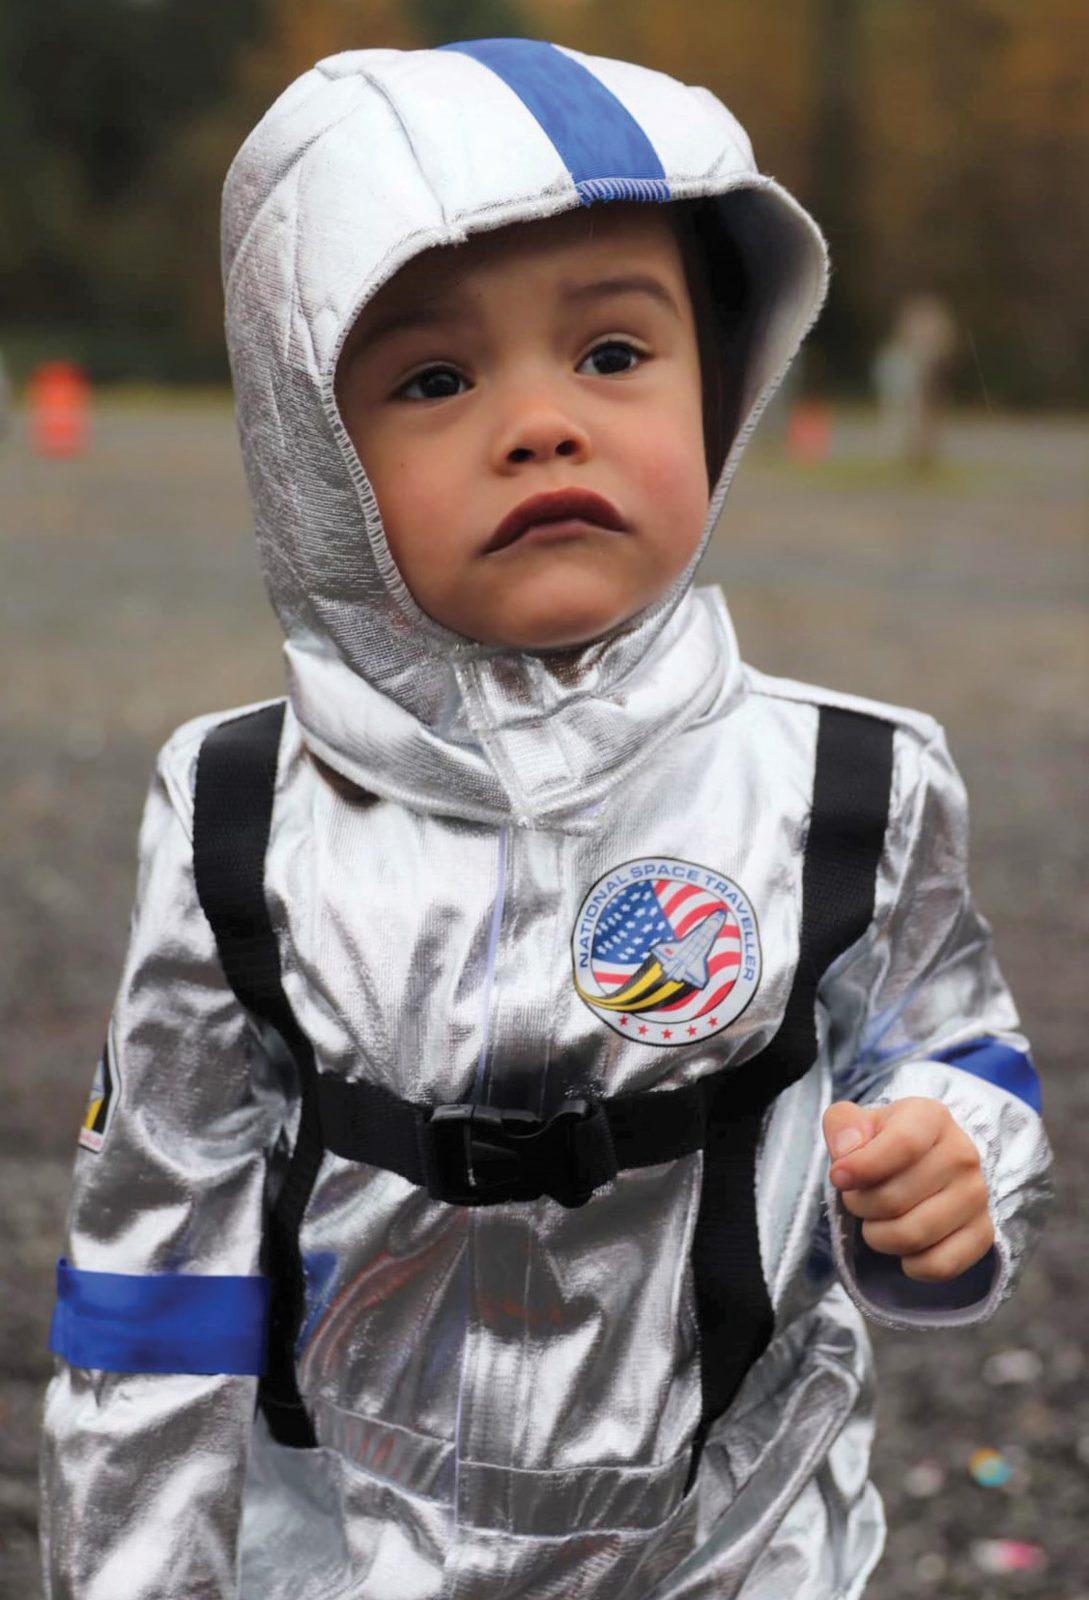 Child in Astronaut Suit